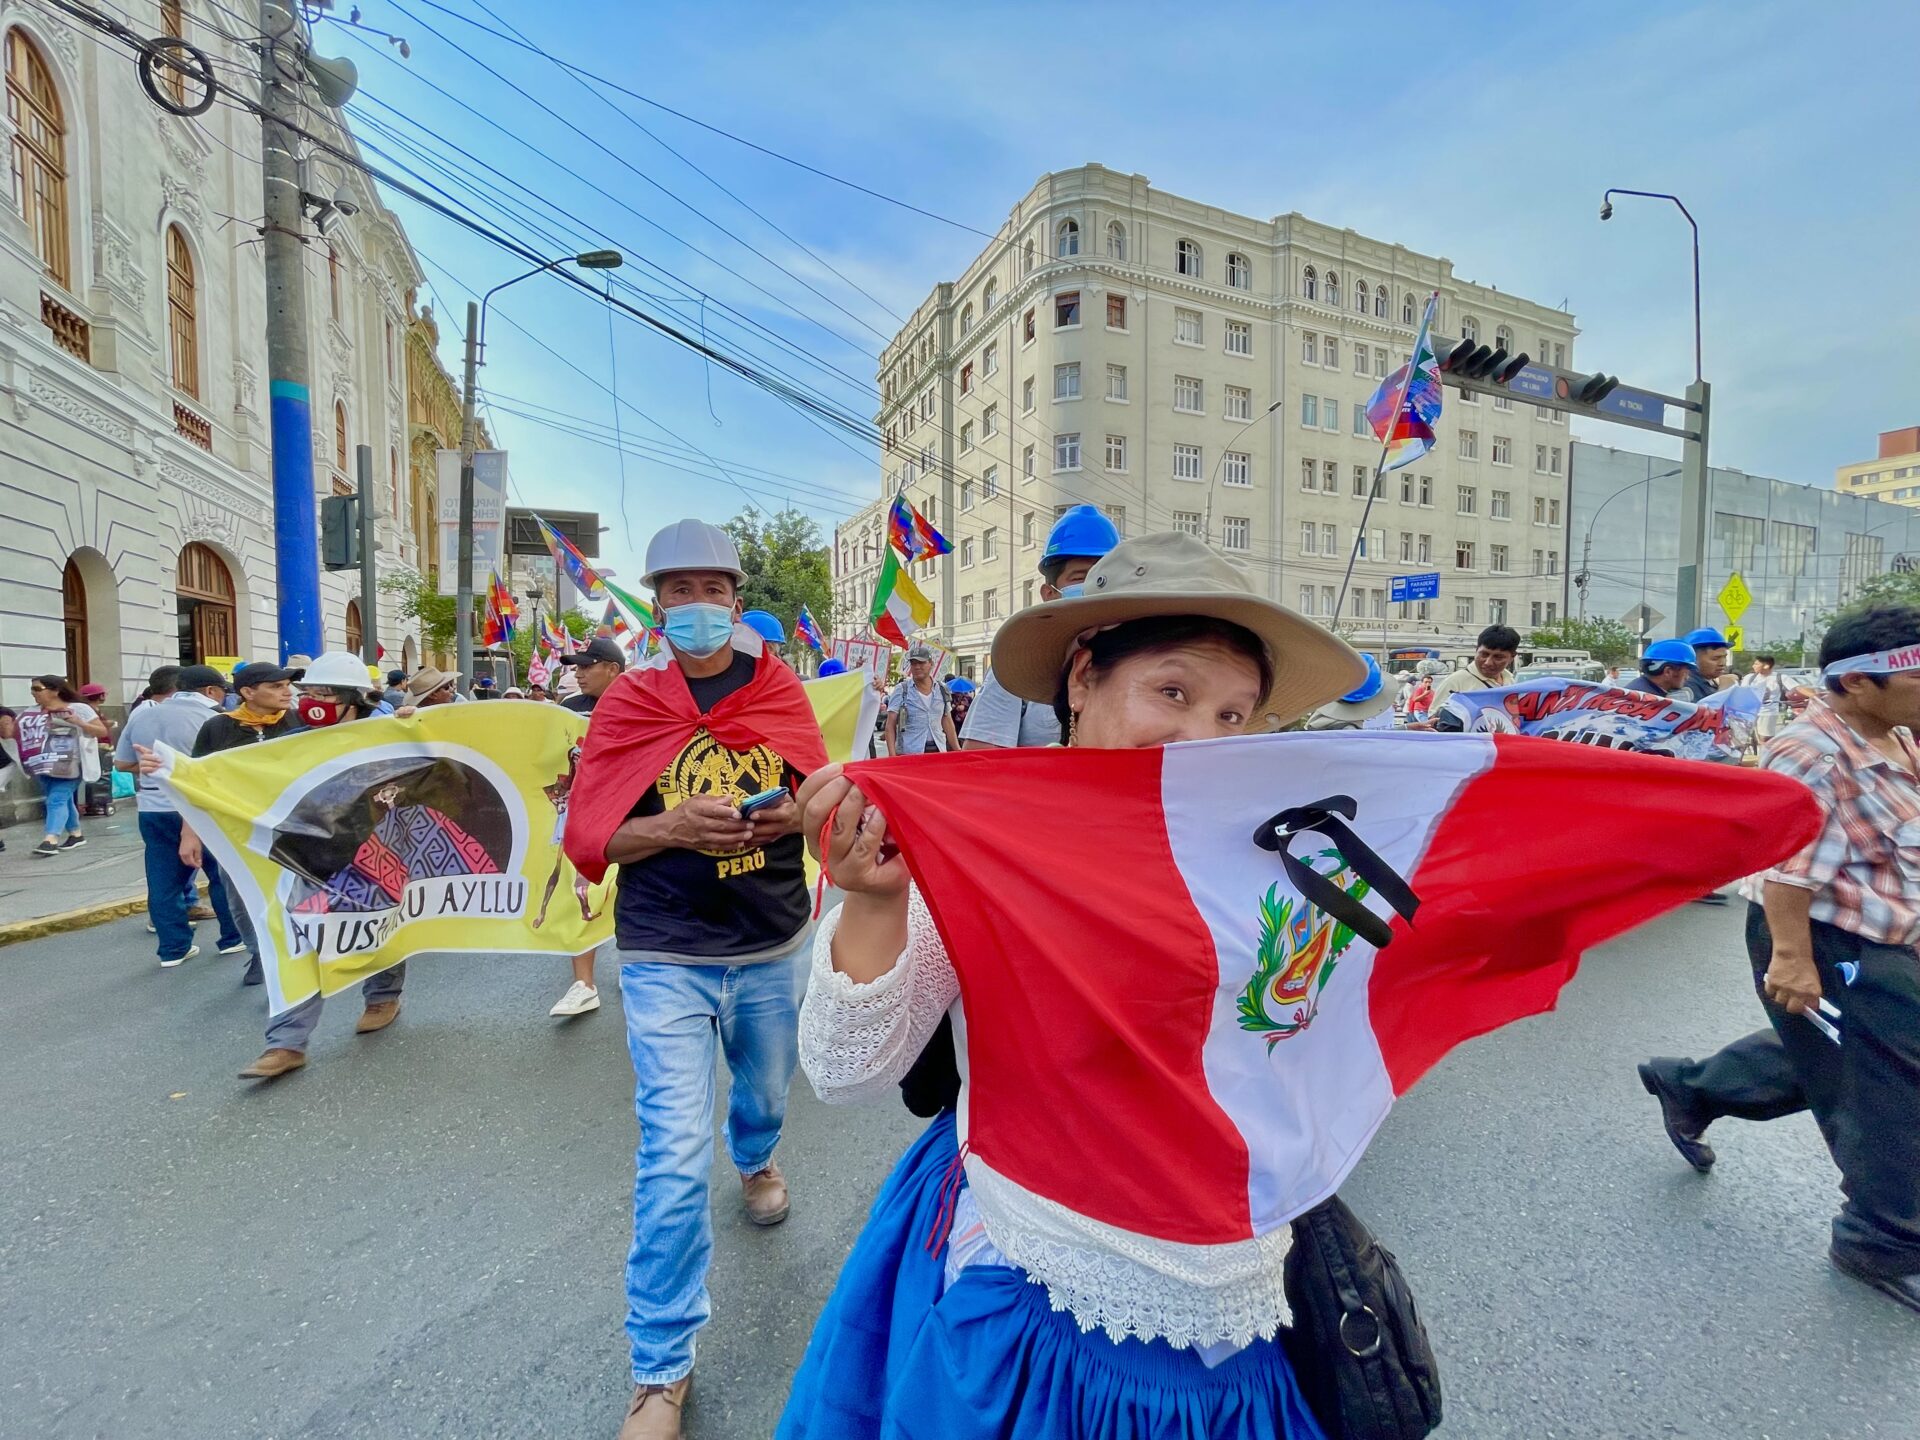 An den Demos in Lima sind Menschen aus den südlichen Provinzen Puno, Cusco, Ayacucho, Apurimac ebenso präsent. Für ihre Reise nach Lima haben die Dorfgemeinschaften und die Händler in den Städten gesammelt. Oft kommen die Demonstranten vom Land bei Verwandten in Lima unter. ©Vera Lentz